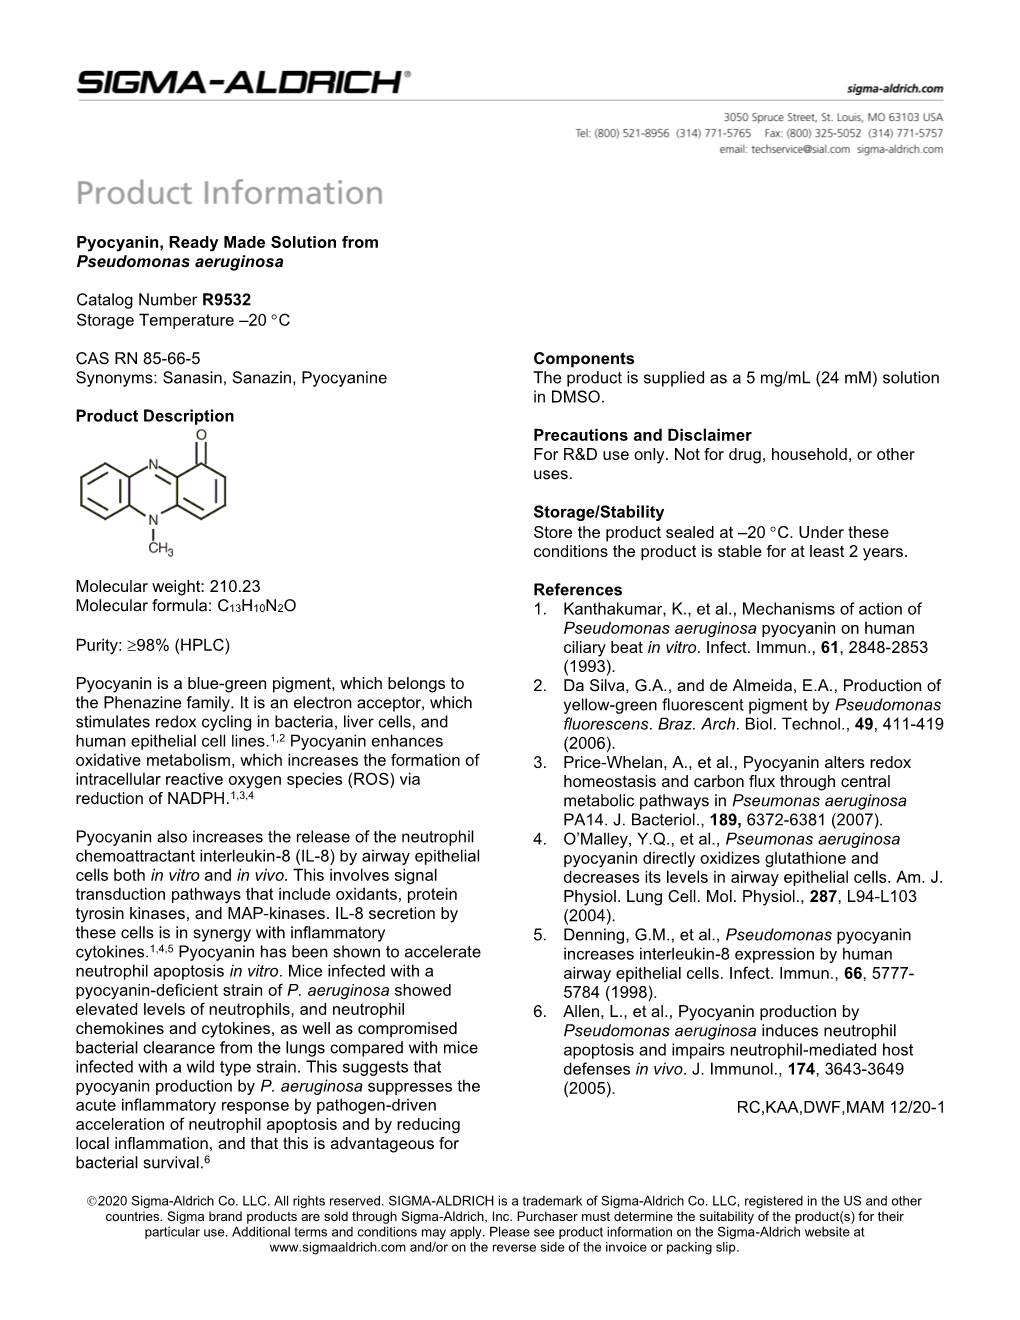 Pyocyanin (R9532)